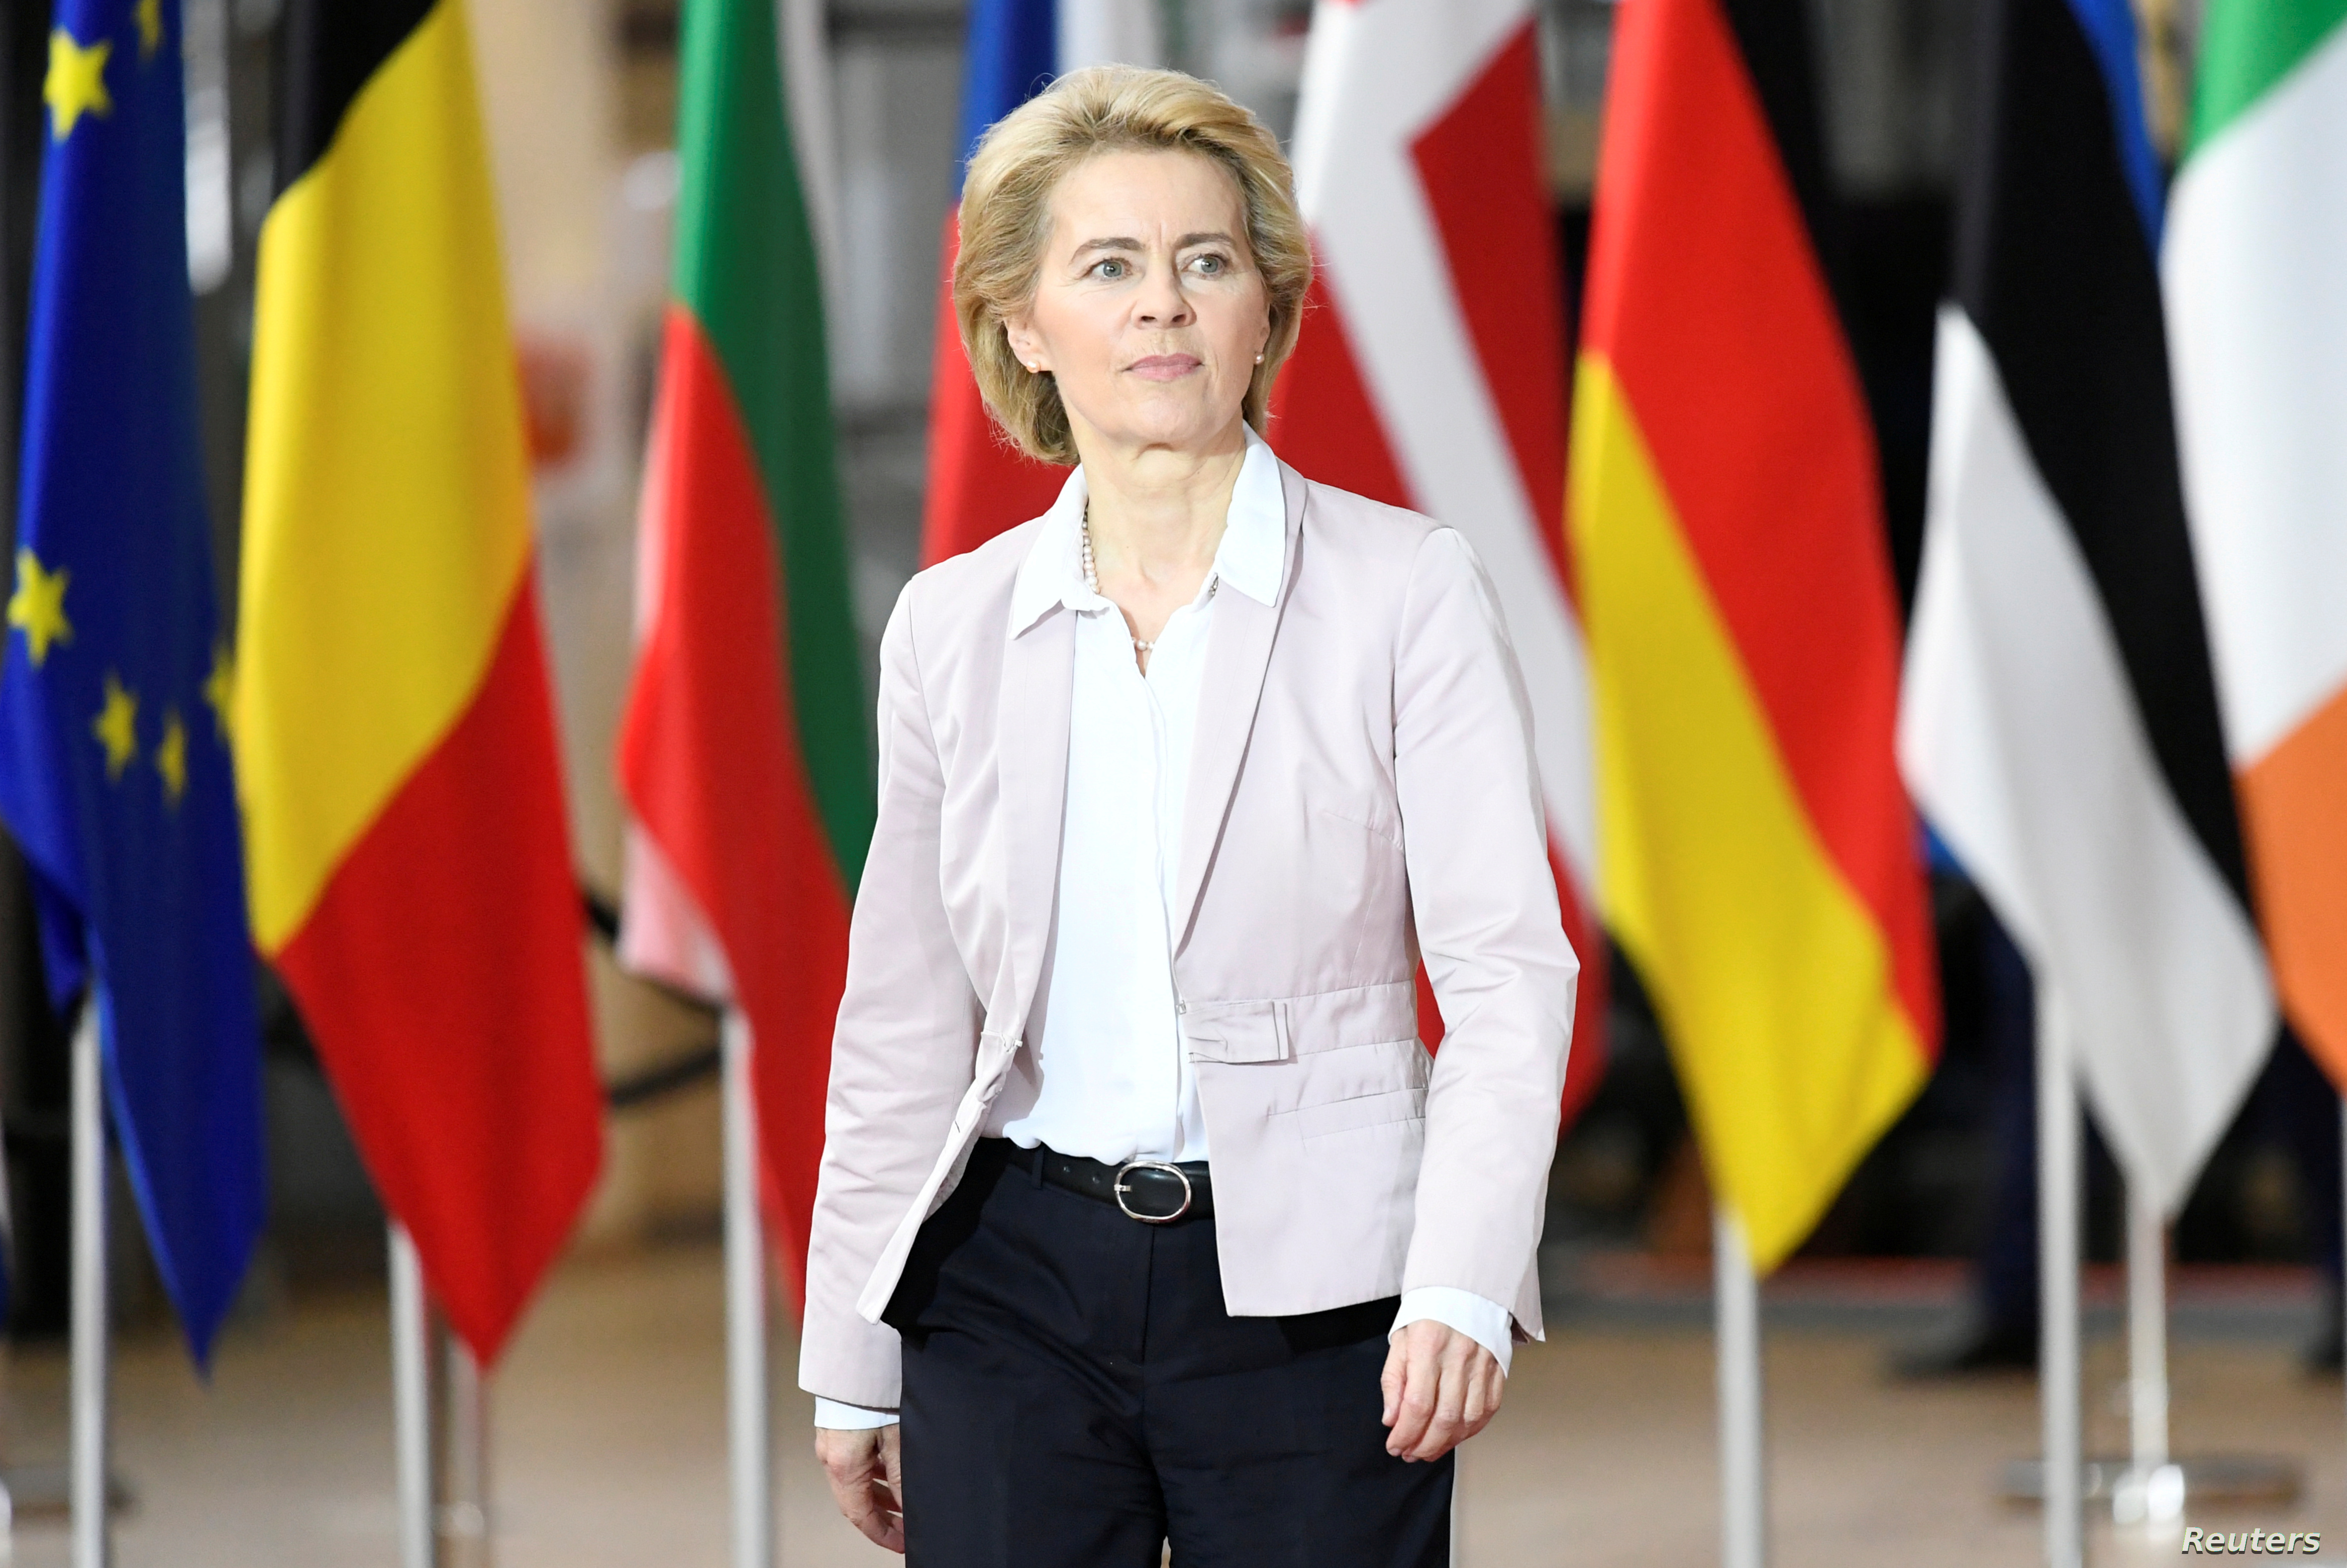 رئيسة المفوضية الأوروبية: سنستهدف نقطة ضعف روسيا إذا غزت أوكرانيا